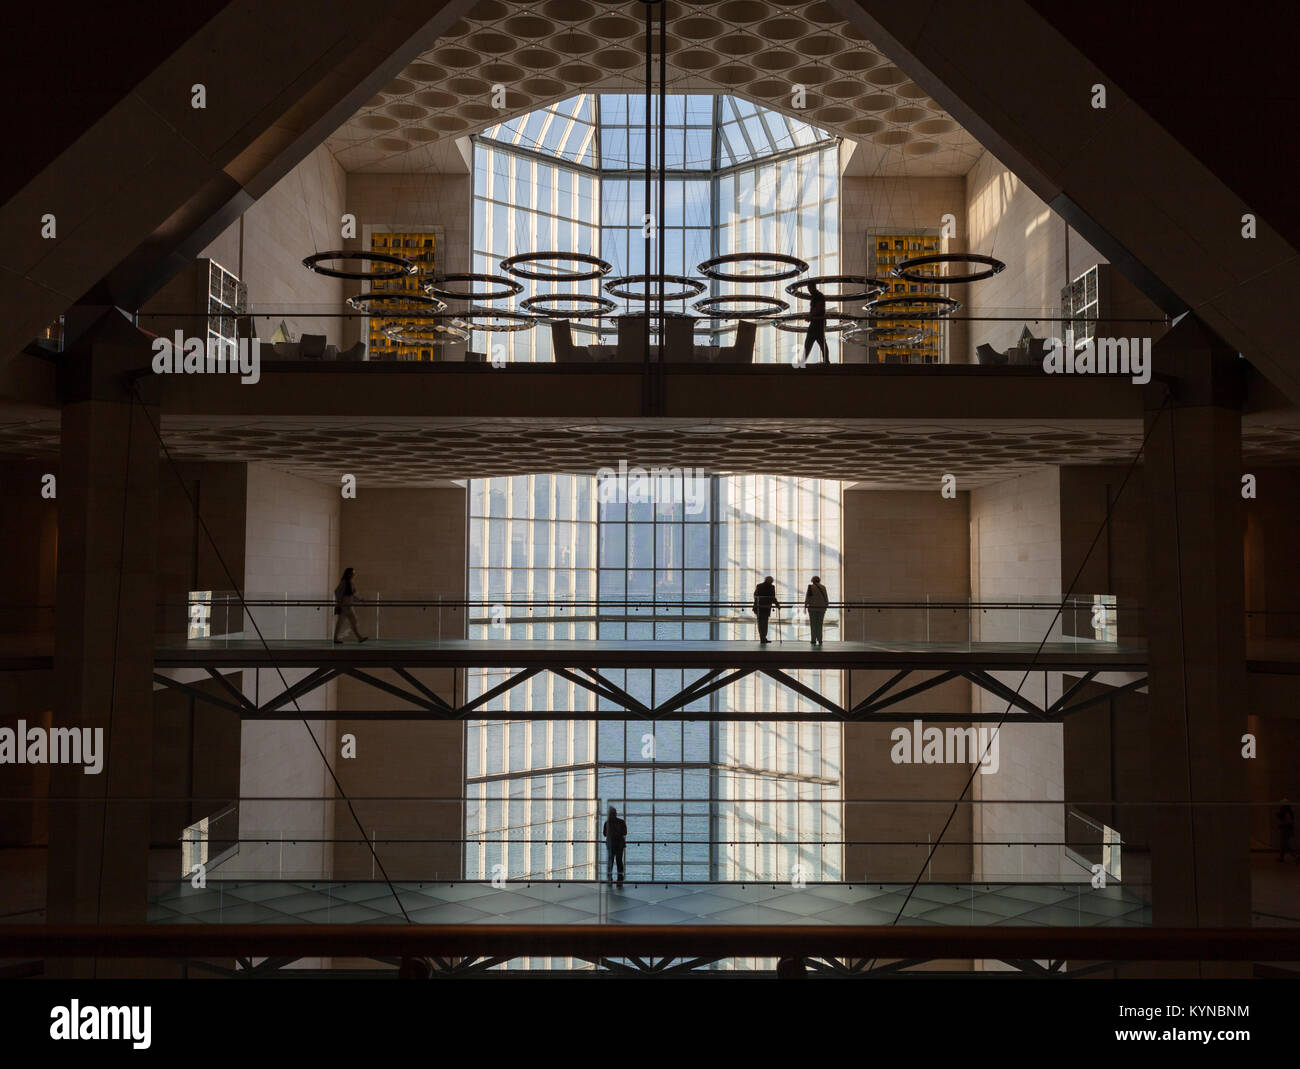 Museum für Islamische Kunst in Doha, Katar. Von I.M.Pei entworfen. Blick auf das Atrium zu den oberen Stockwerken Gehwege. Stockfoto